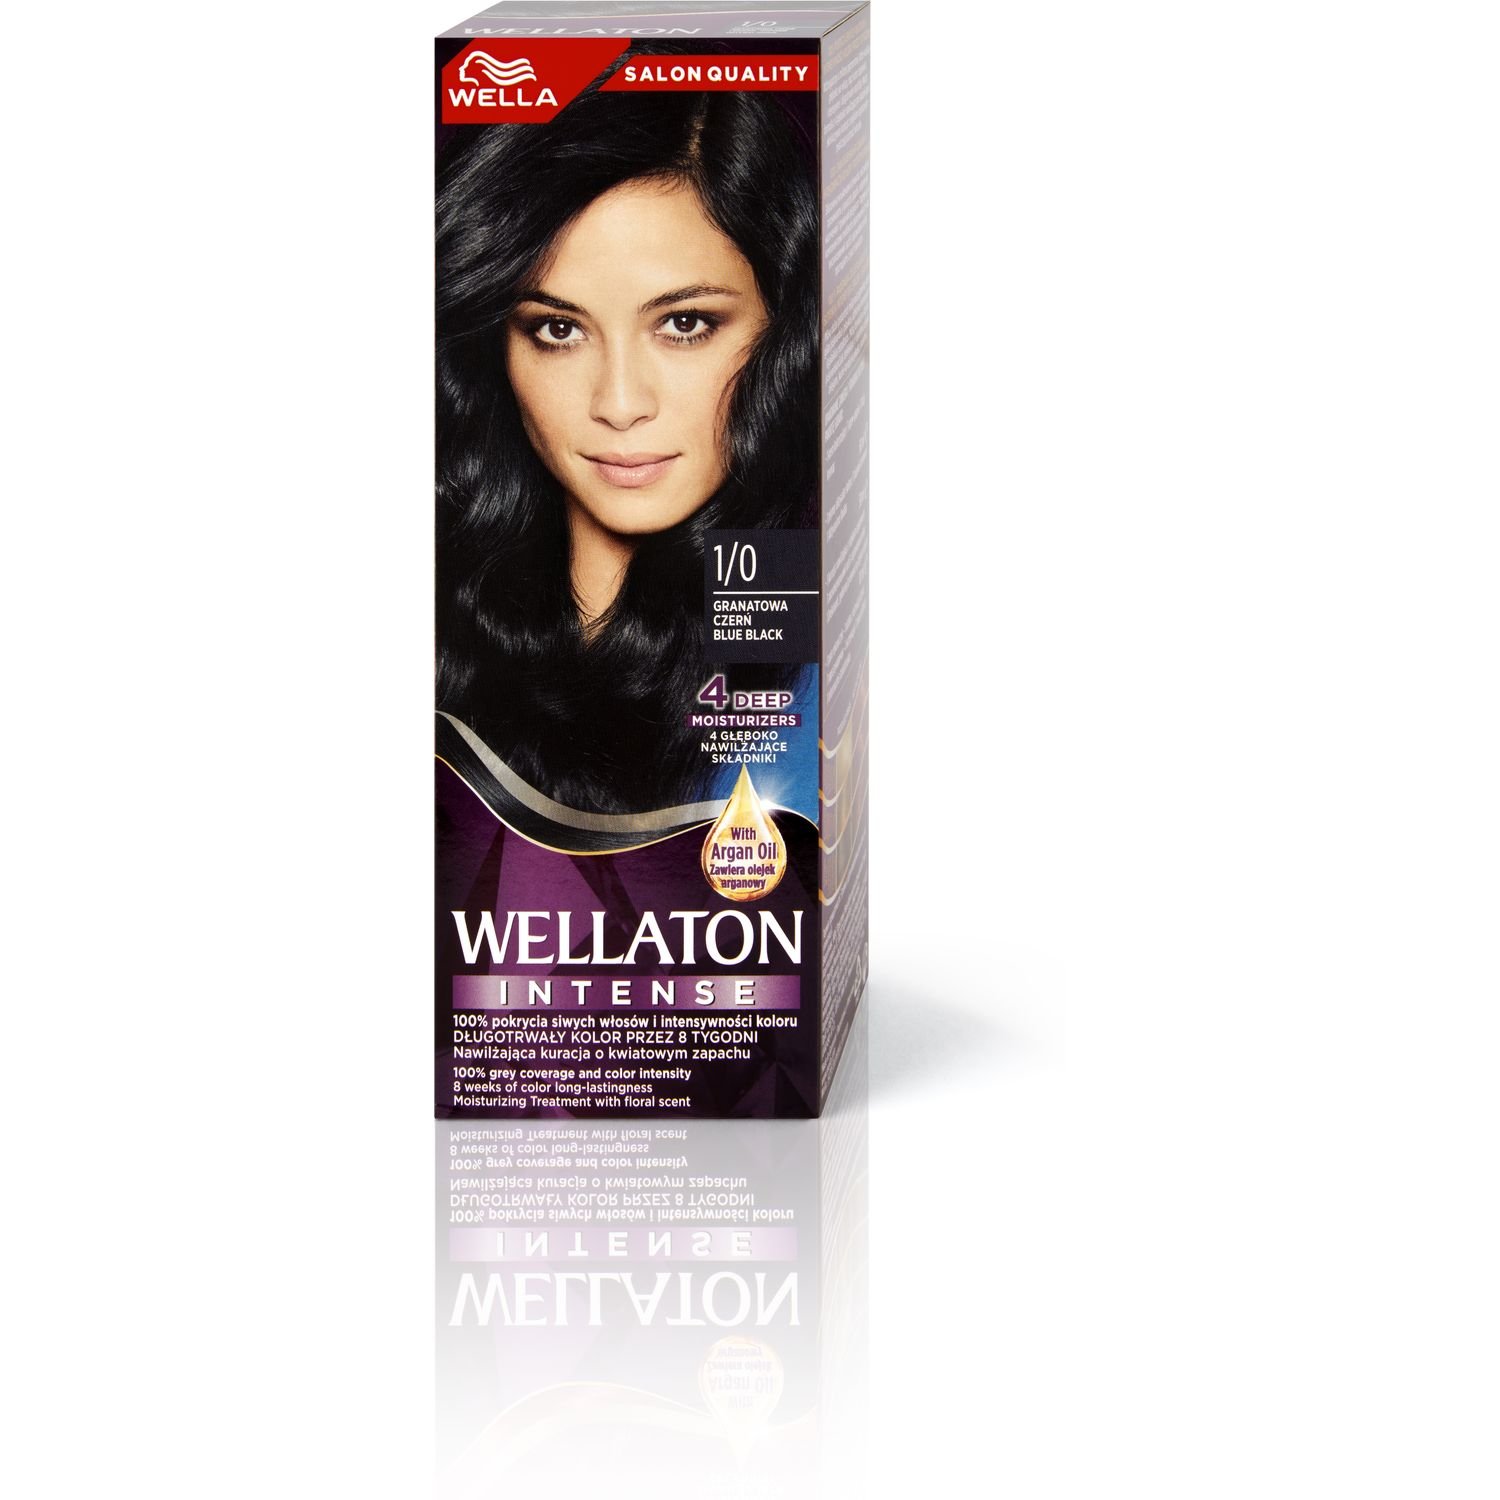 Інтенсивна крем-фарба для волосся Wellaton, відтінок 1/0 (Синяво-чорний), 110 мл - фото 6